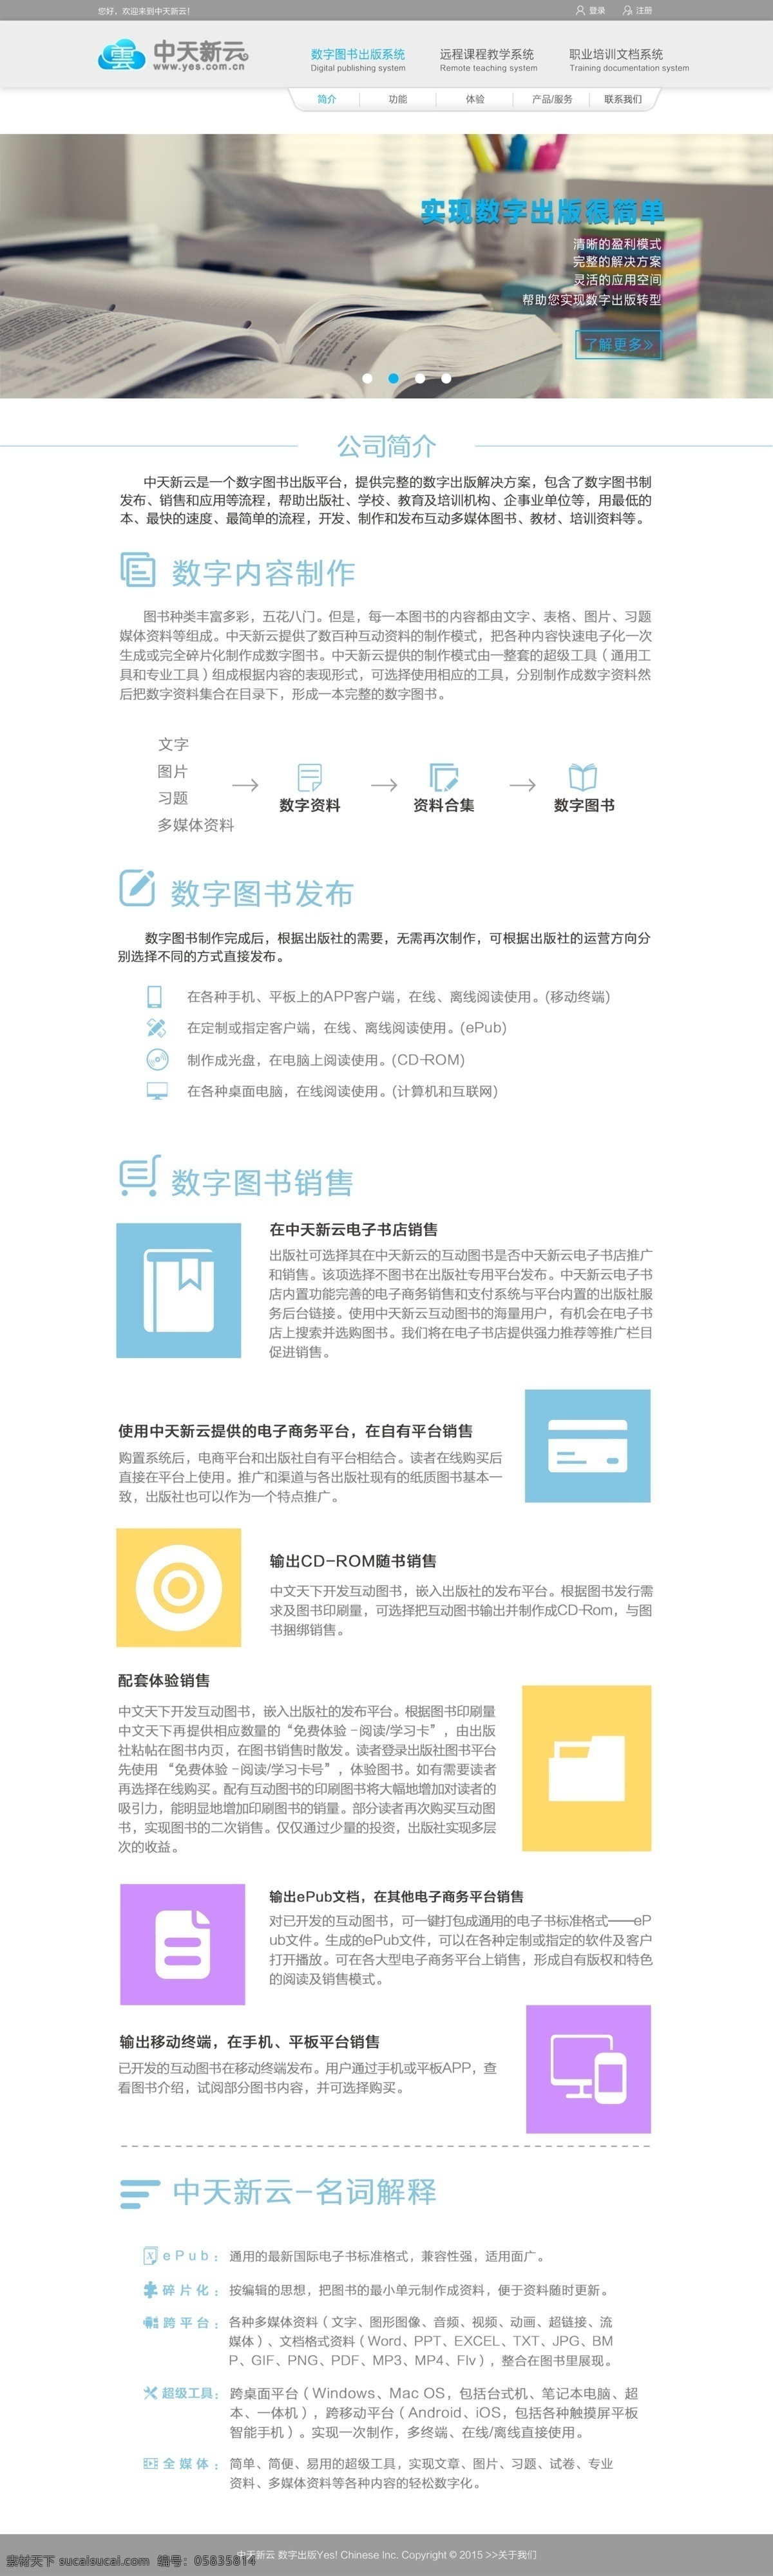 中天新讯 教育网站 教育 网站设计 白色